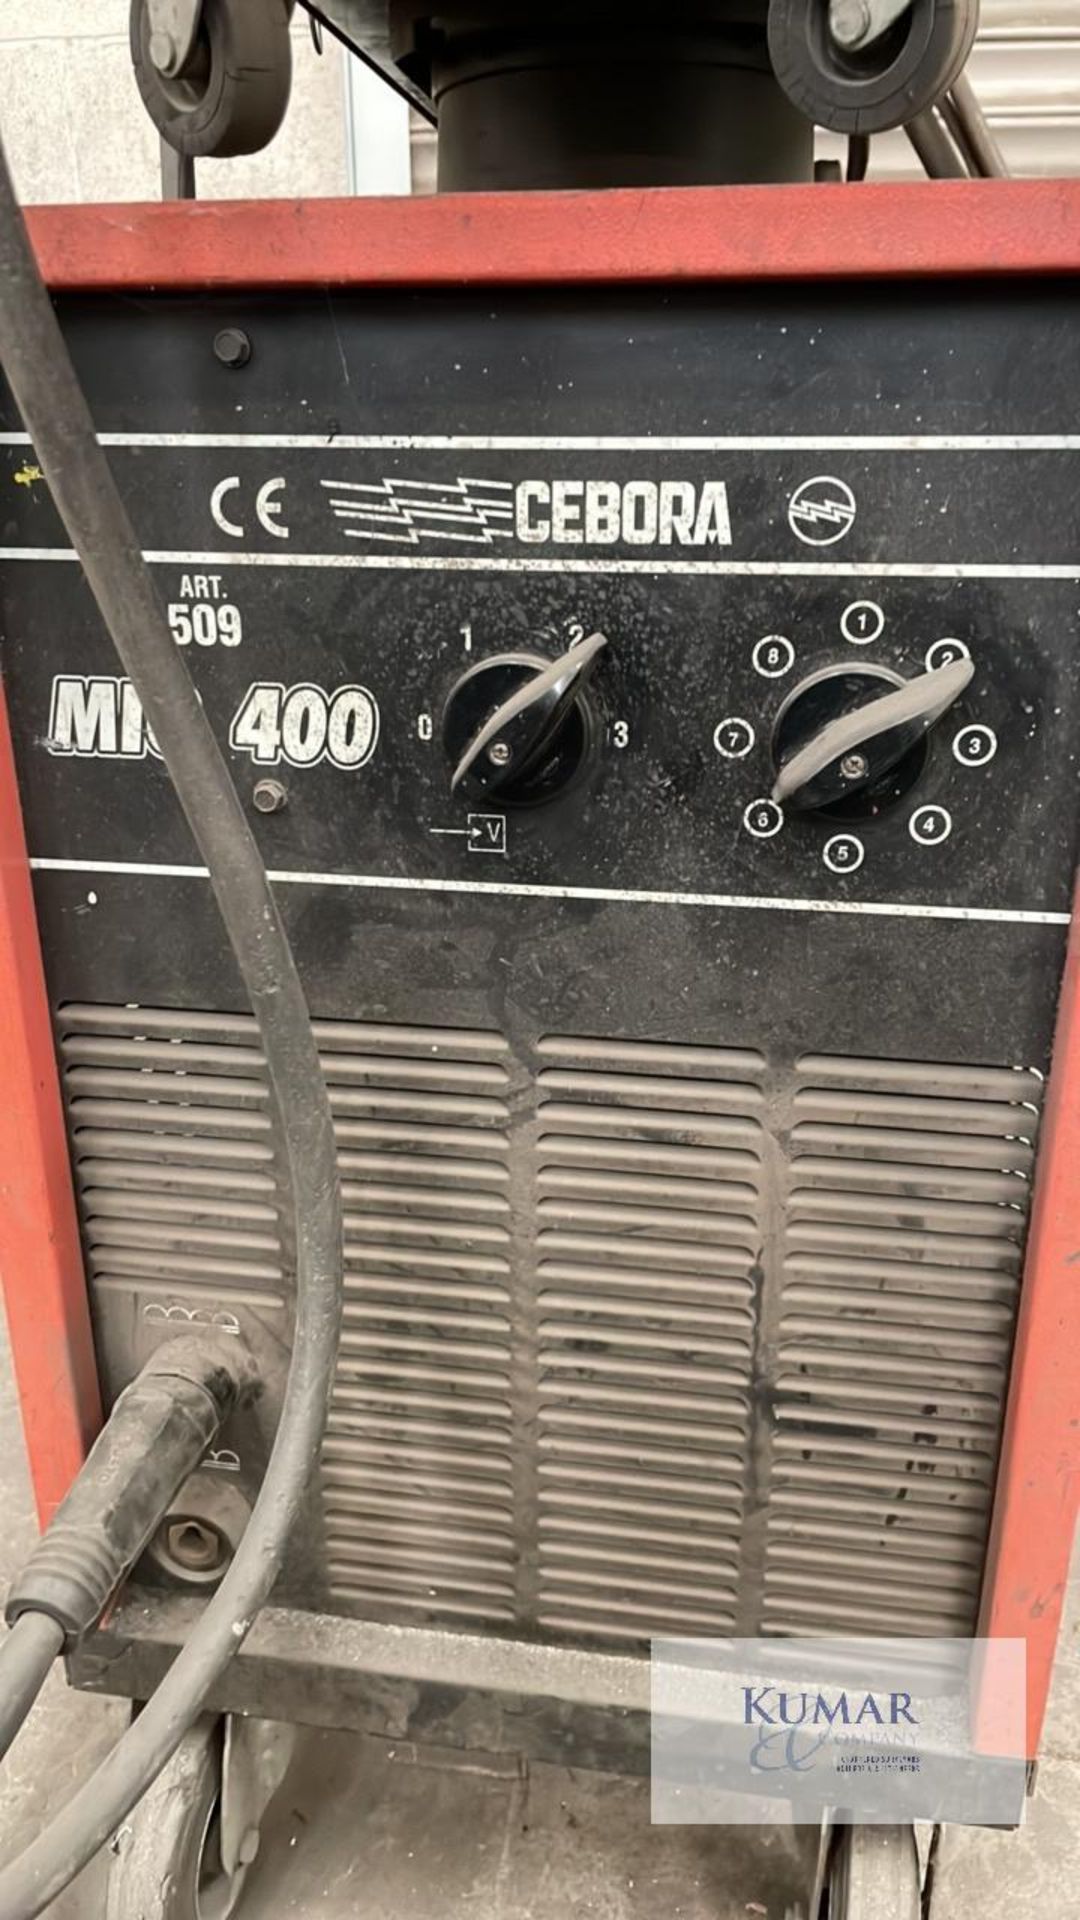 Cebora Mig 400 Welder with Wire Feed - Bild 5 aus 5